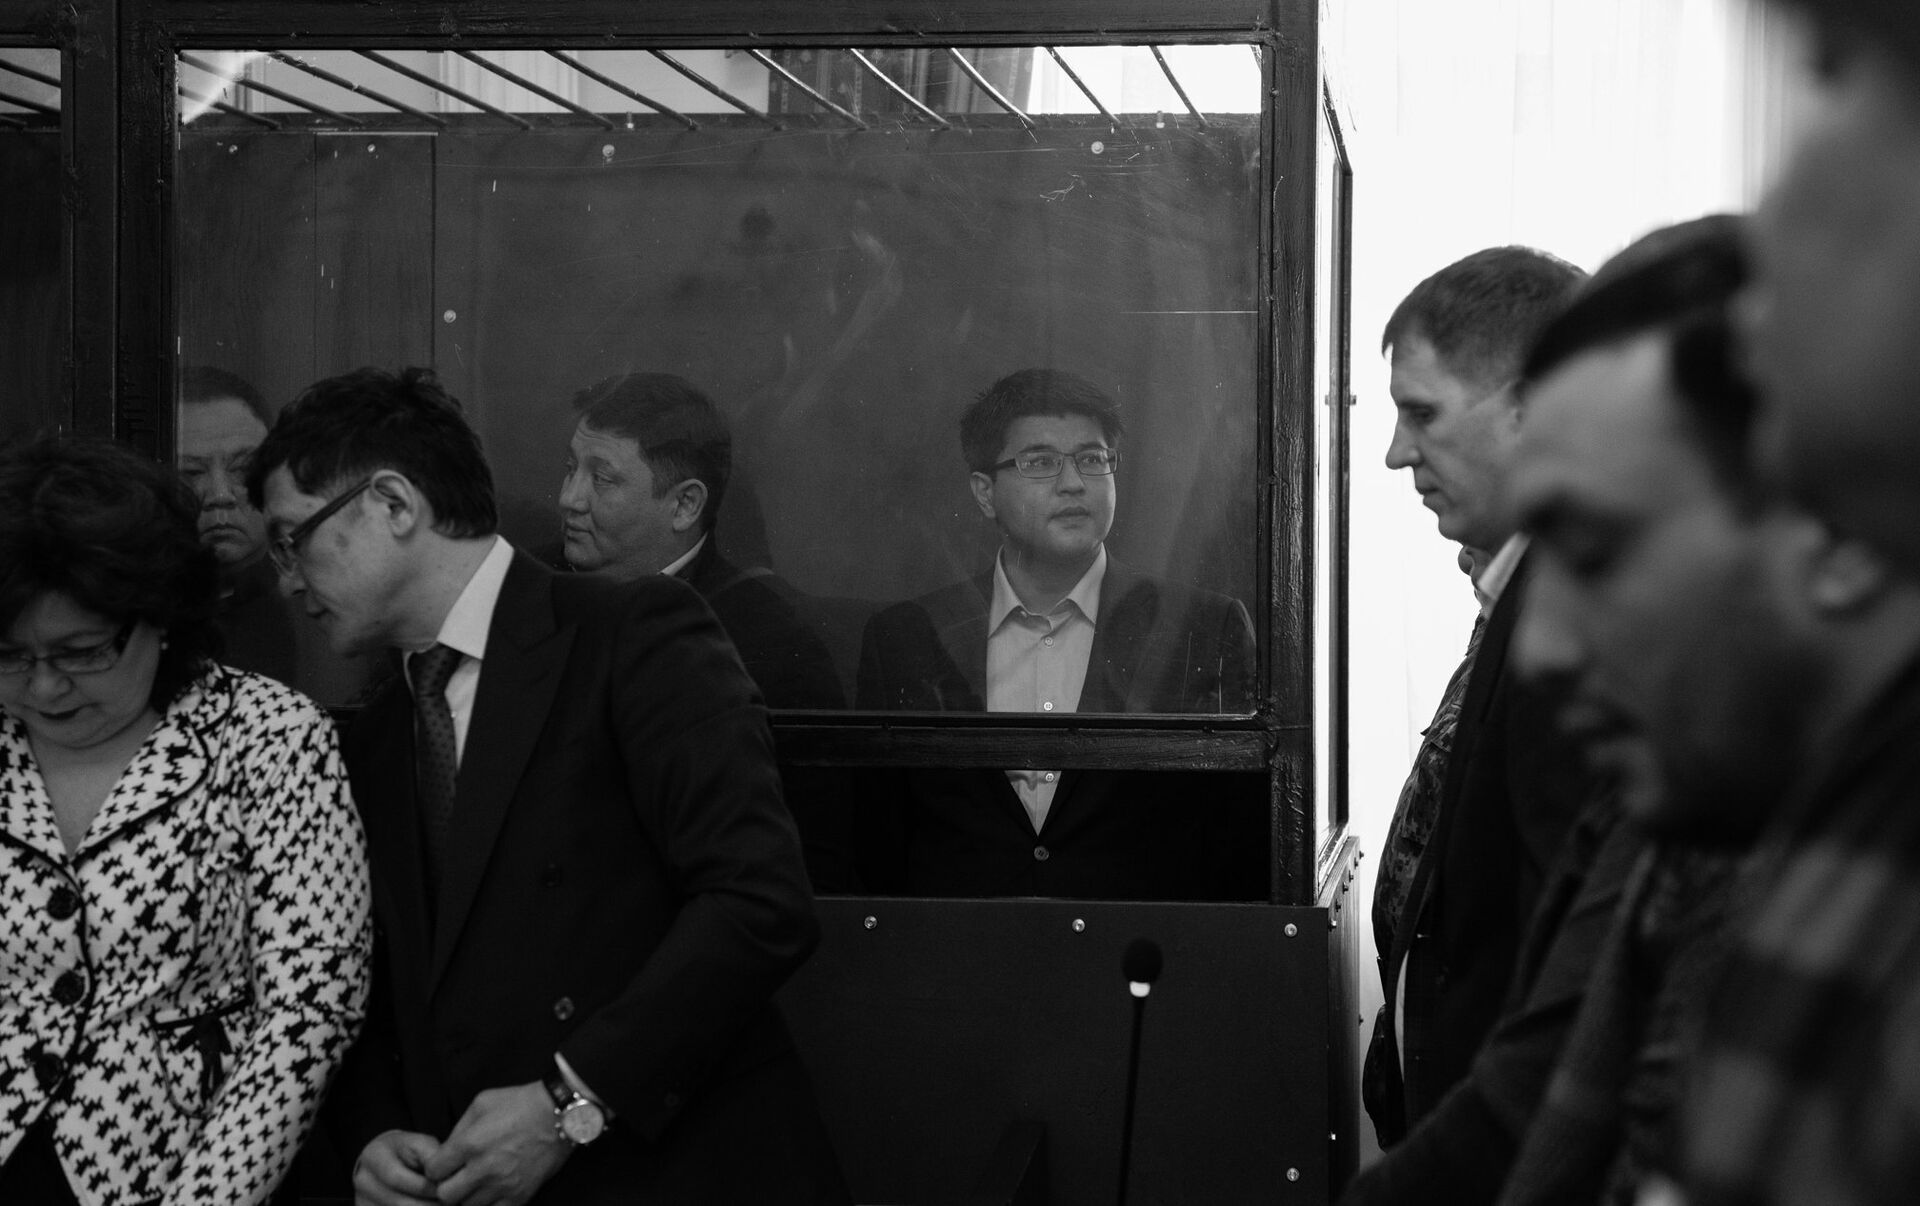 Закончился ли суд над бишимбаевым. Куандыком Бишимбаевым. Фото с судебного заседания Бишимбаева.